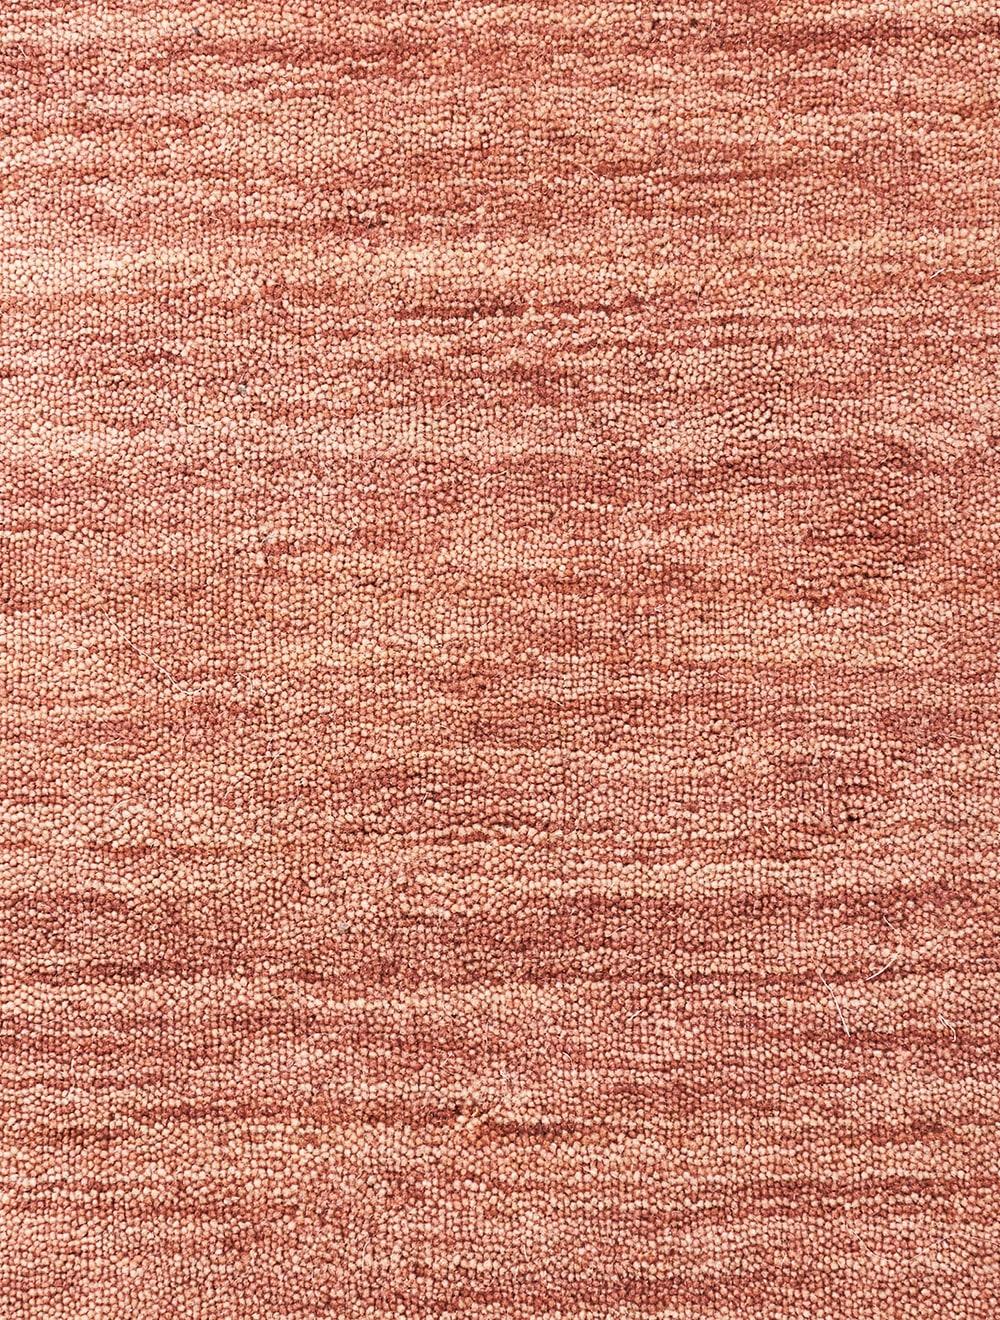 Post-Modern Blush Earth Carpet by Massimo Copenhagen For Sale